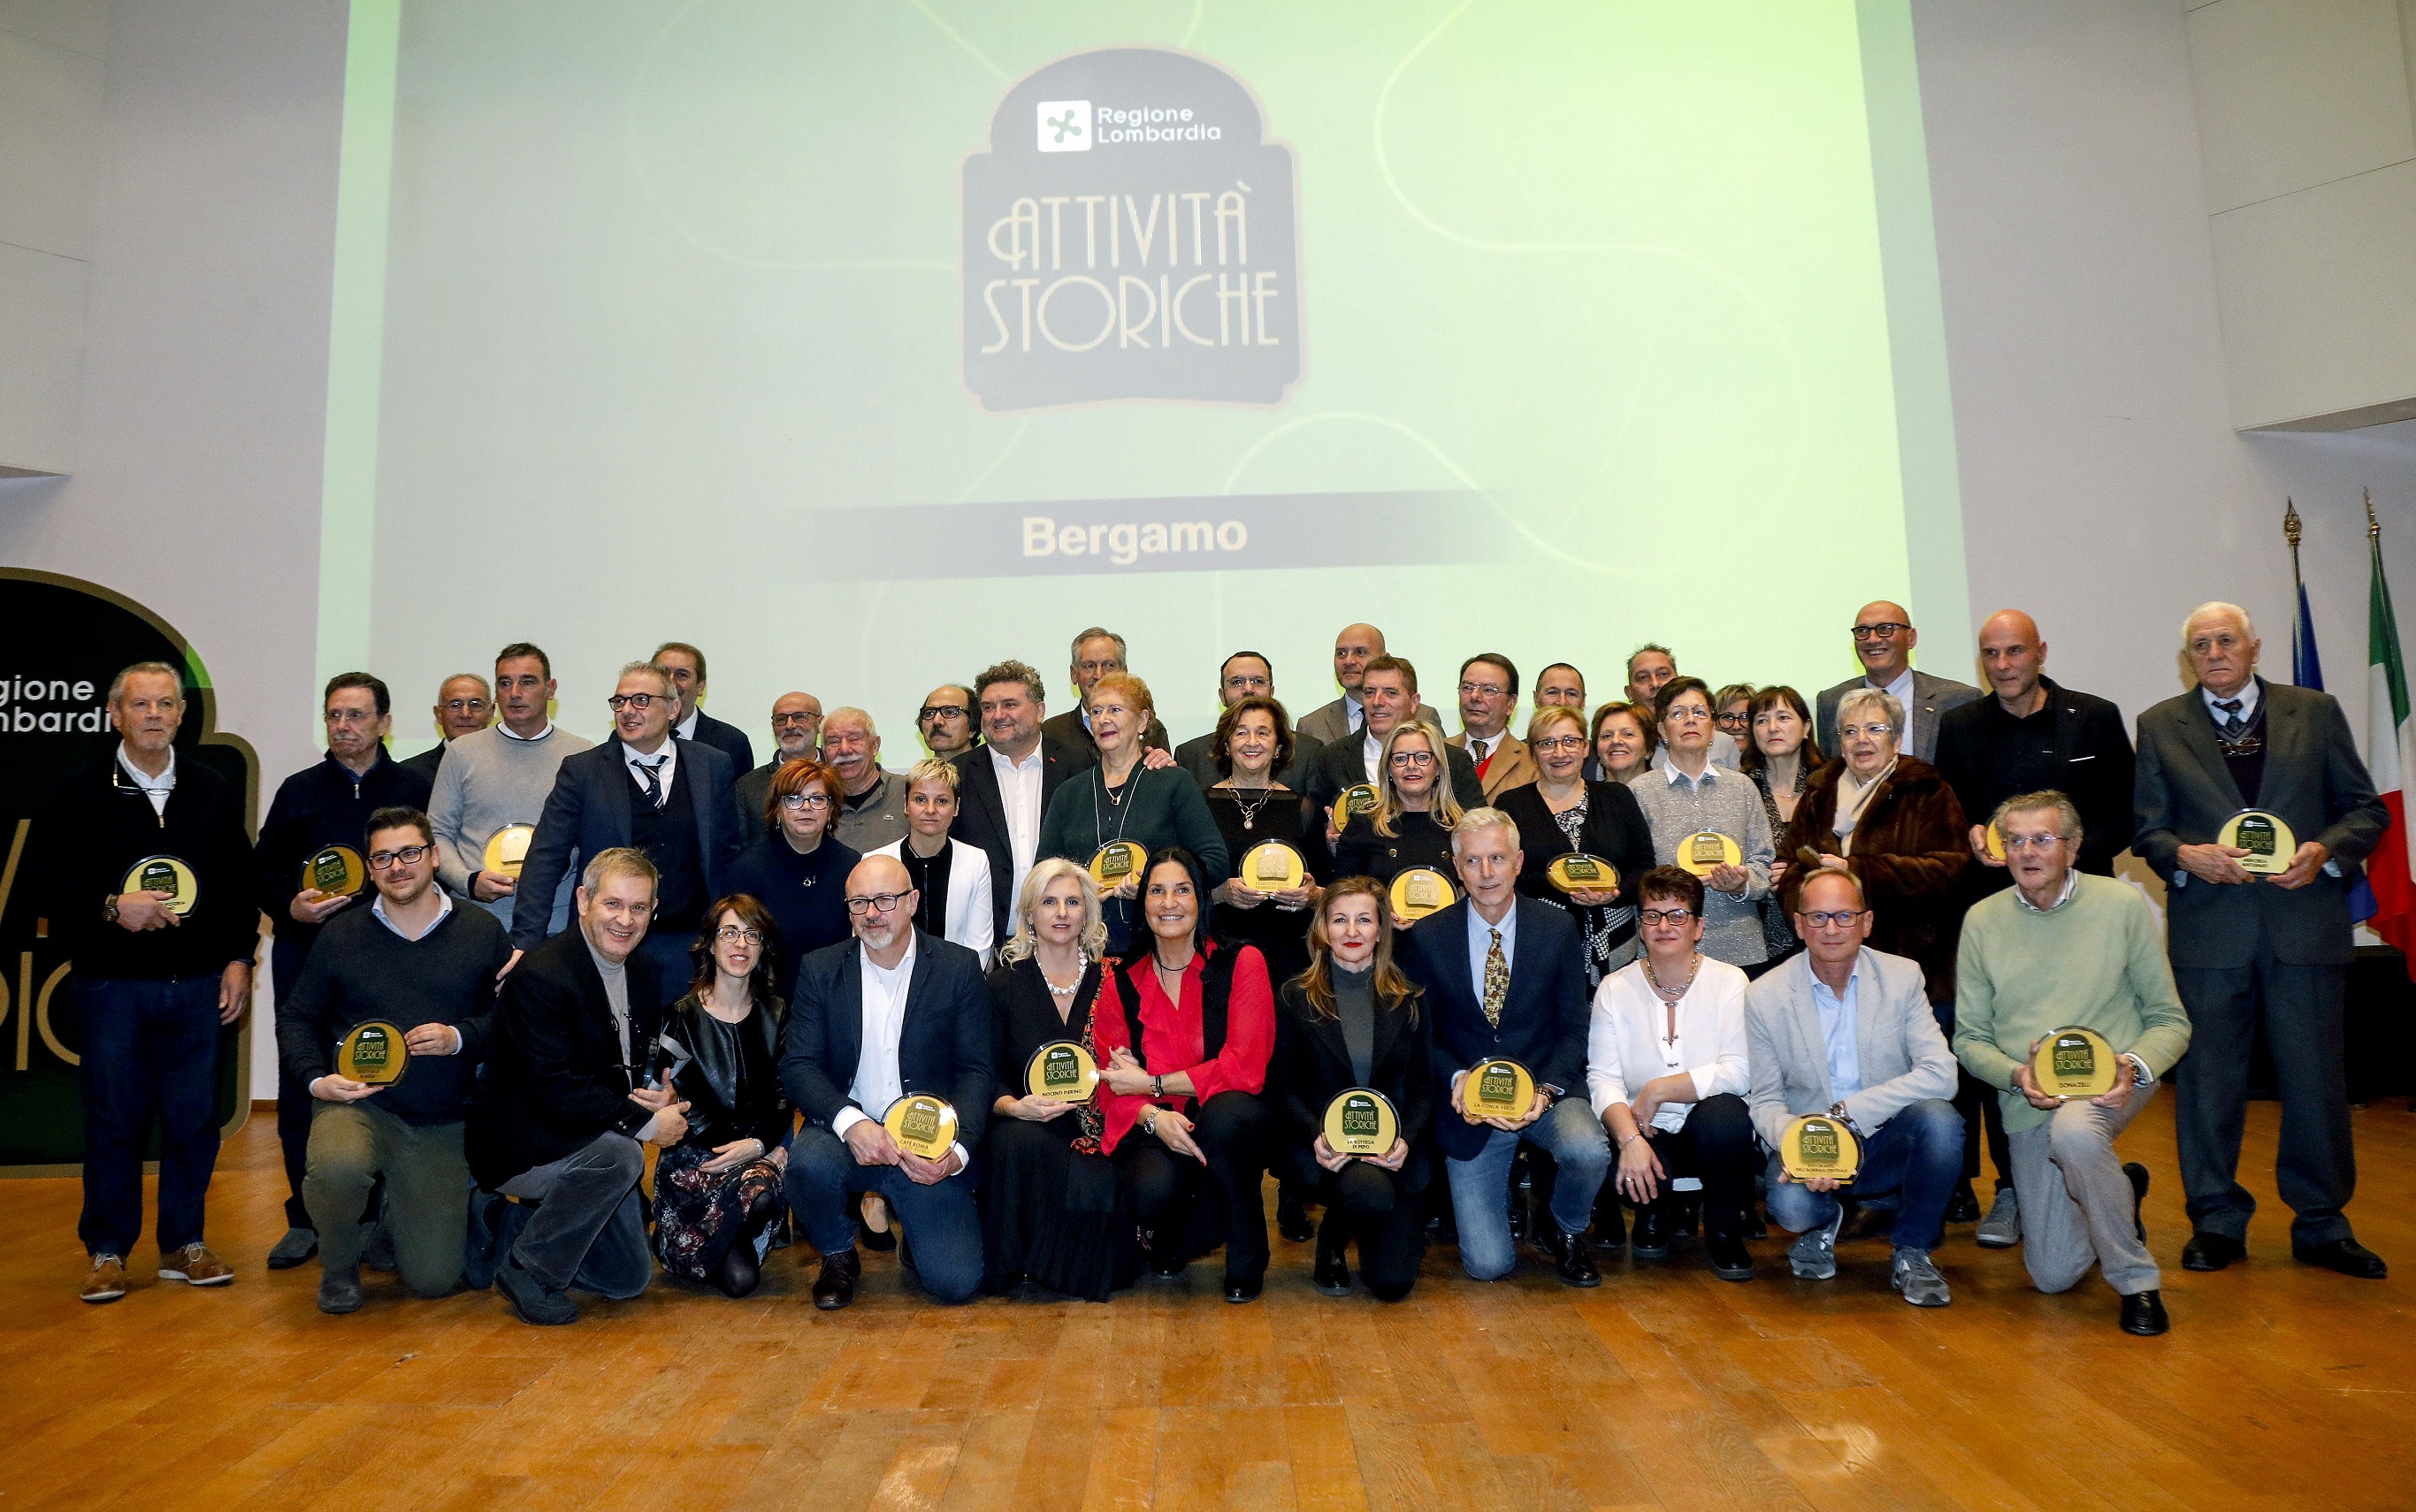 Bergamo premiazione attività storiche 2019